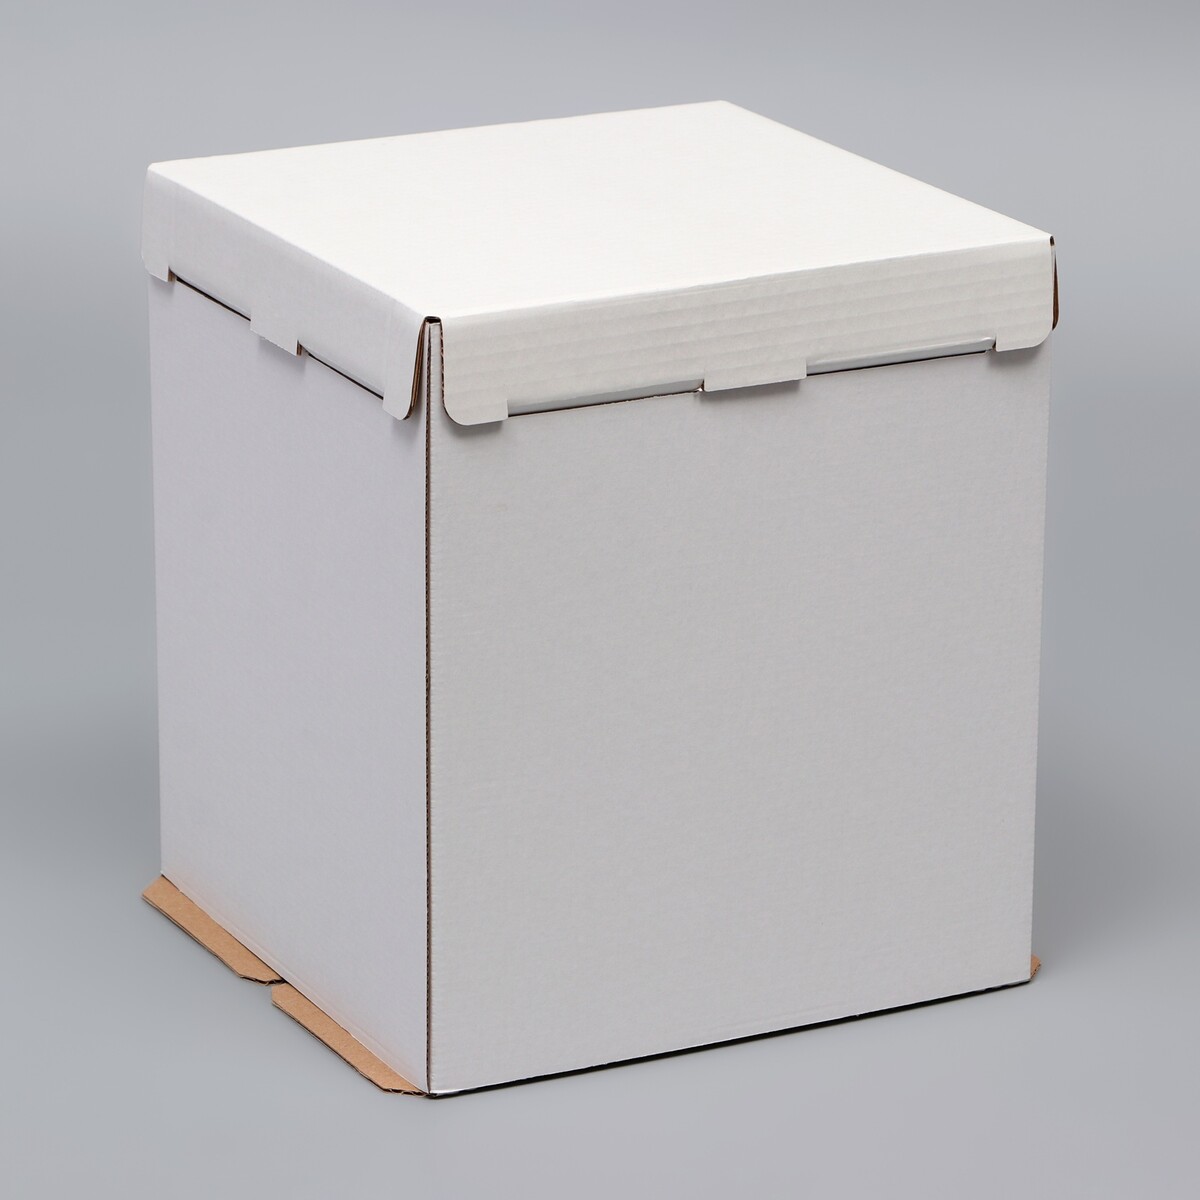 Коробка под торт, без окна, белая, 26 х 26 х 30 см